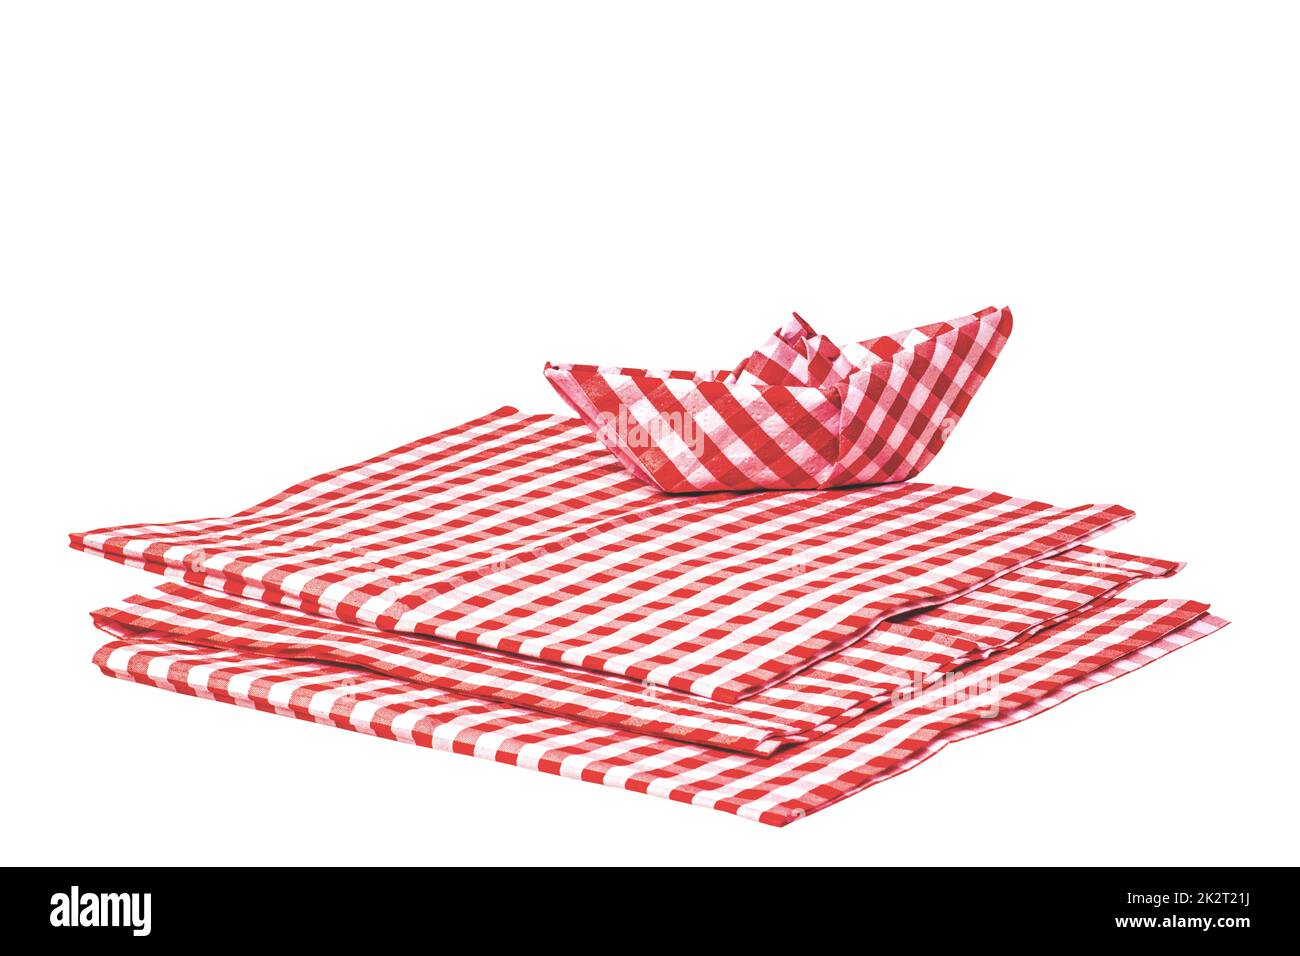 Gros plan d'une pile de serviettes en papier à carreaux rouges et d'un papier plié isolé sur un fond blanc. Masque. Macro. Serviette empilée ou nappe. Banque D'Images